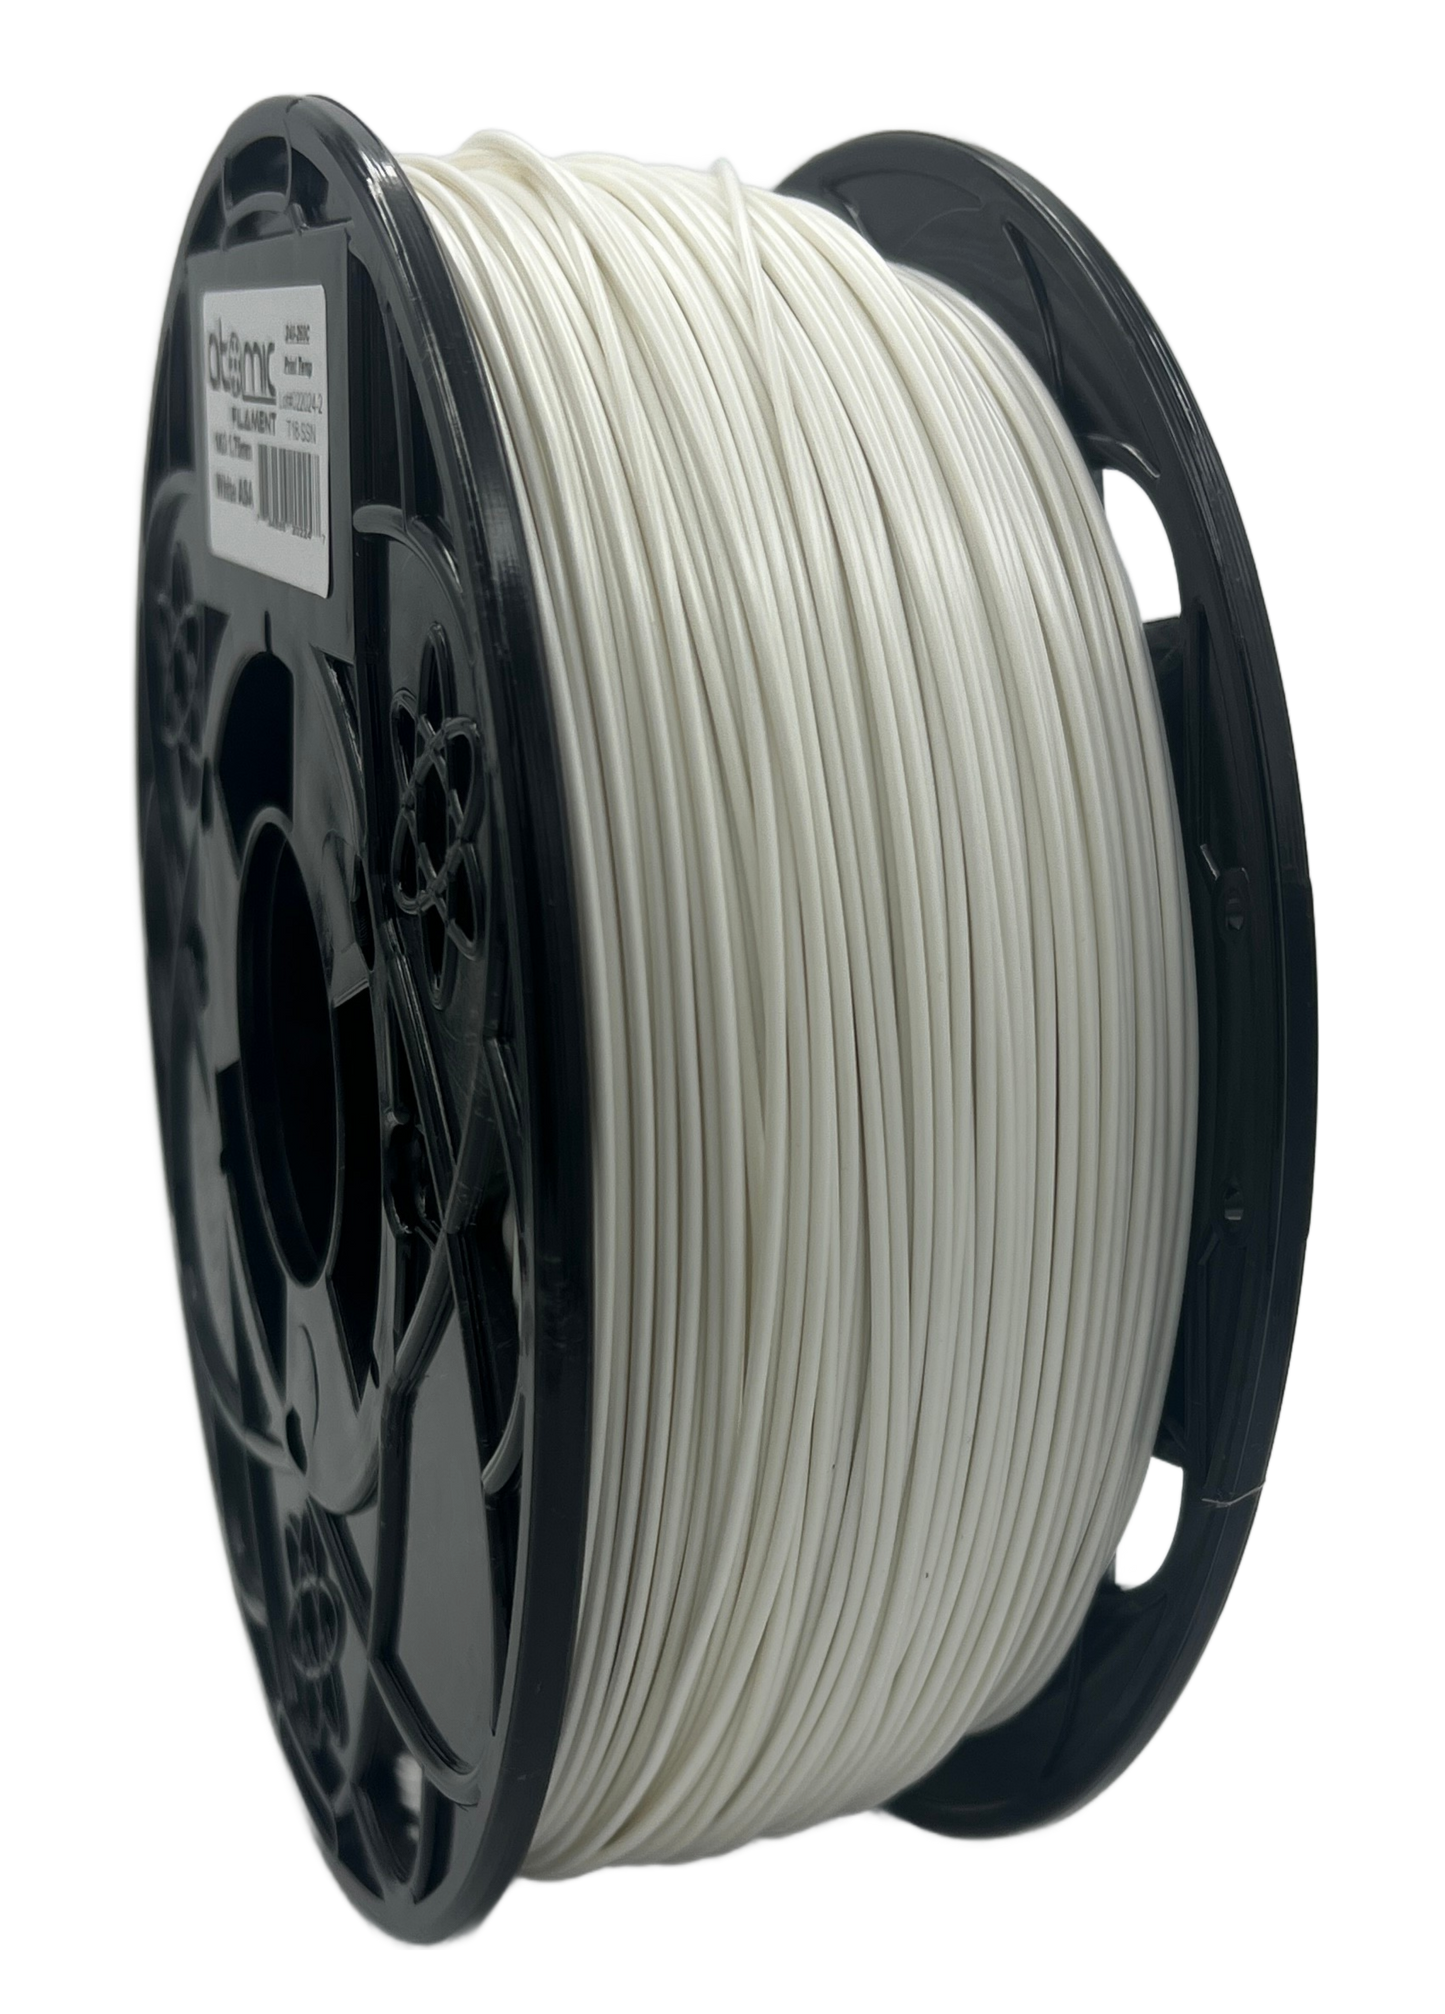 3.5KG White ASA Filament